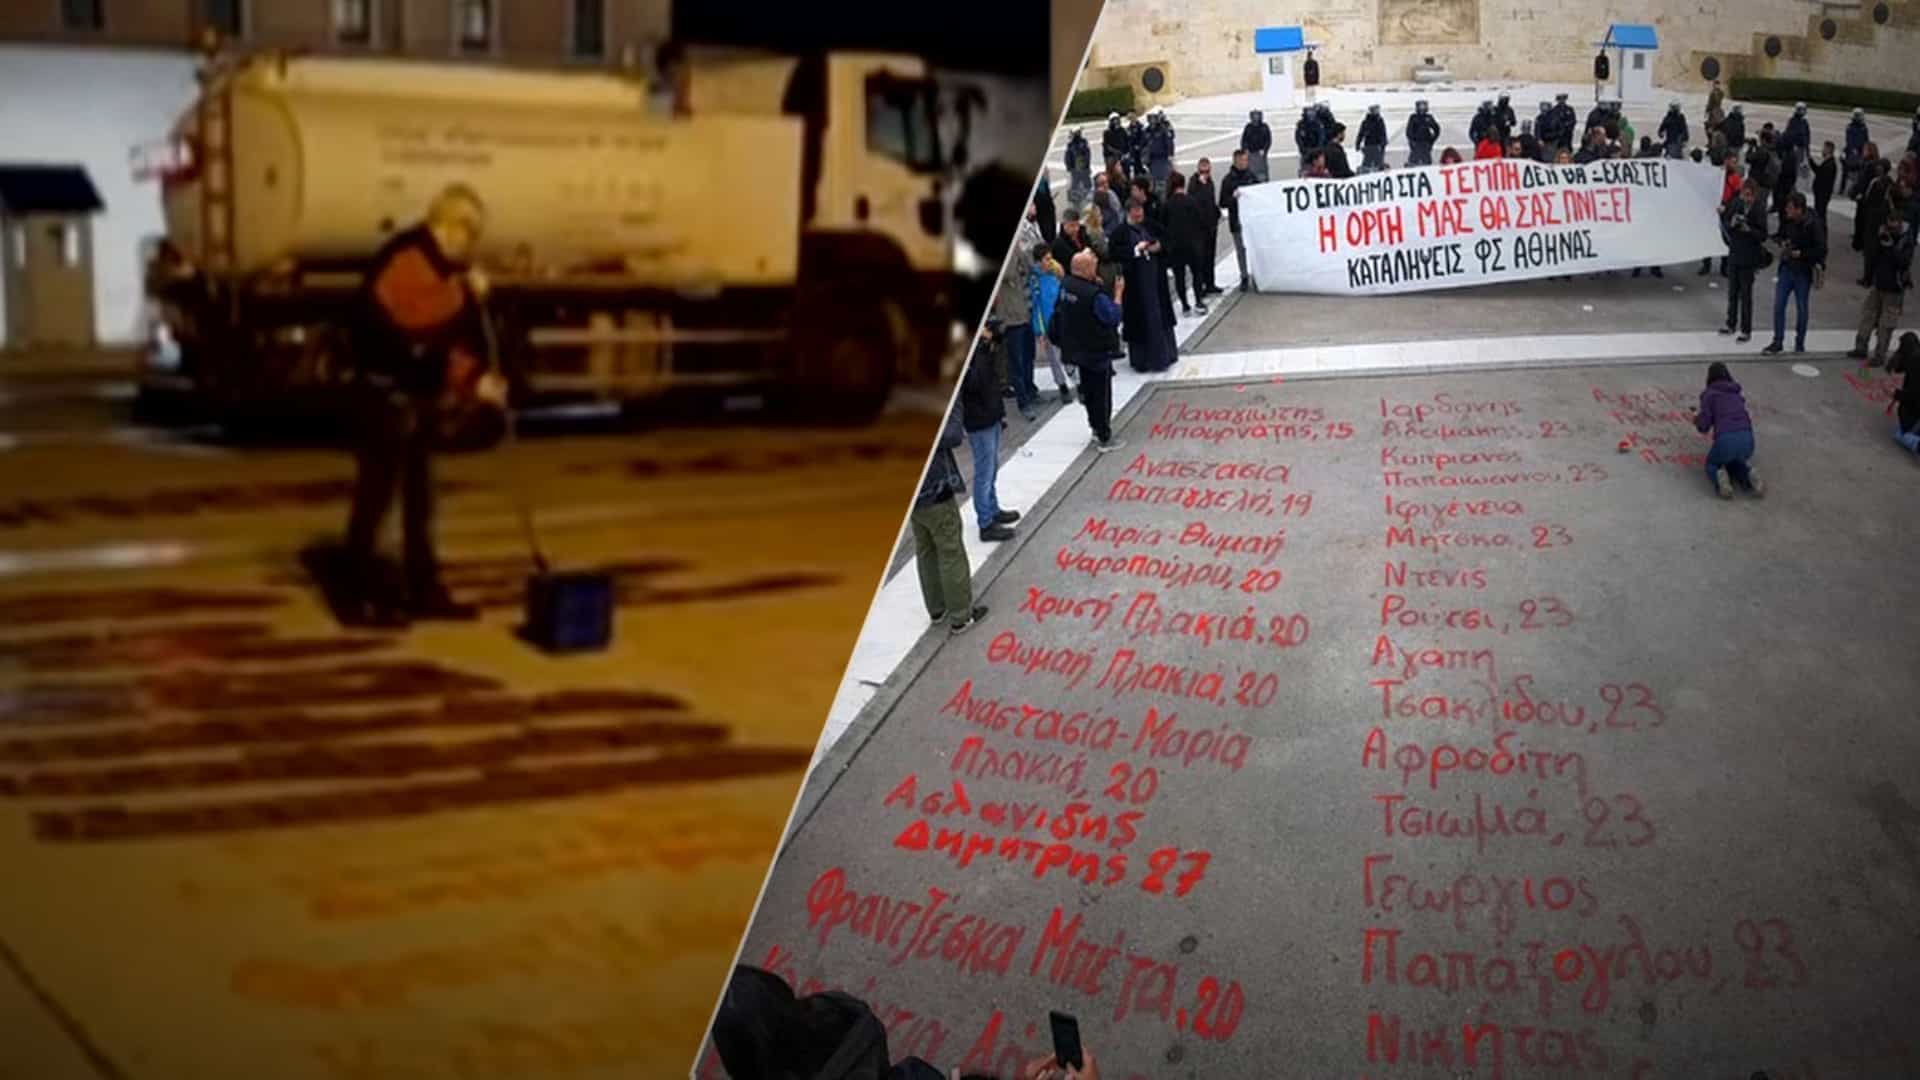 Ντροπή: Έσβησαν τα ονόματα των θυμάτων των Τεμπών μπροστα από την Βουλή (βίντεο)